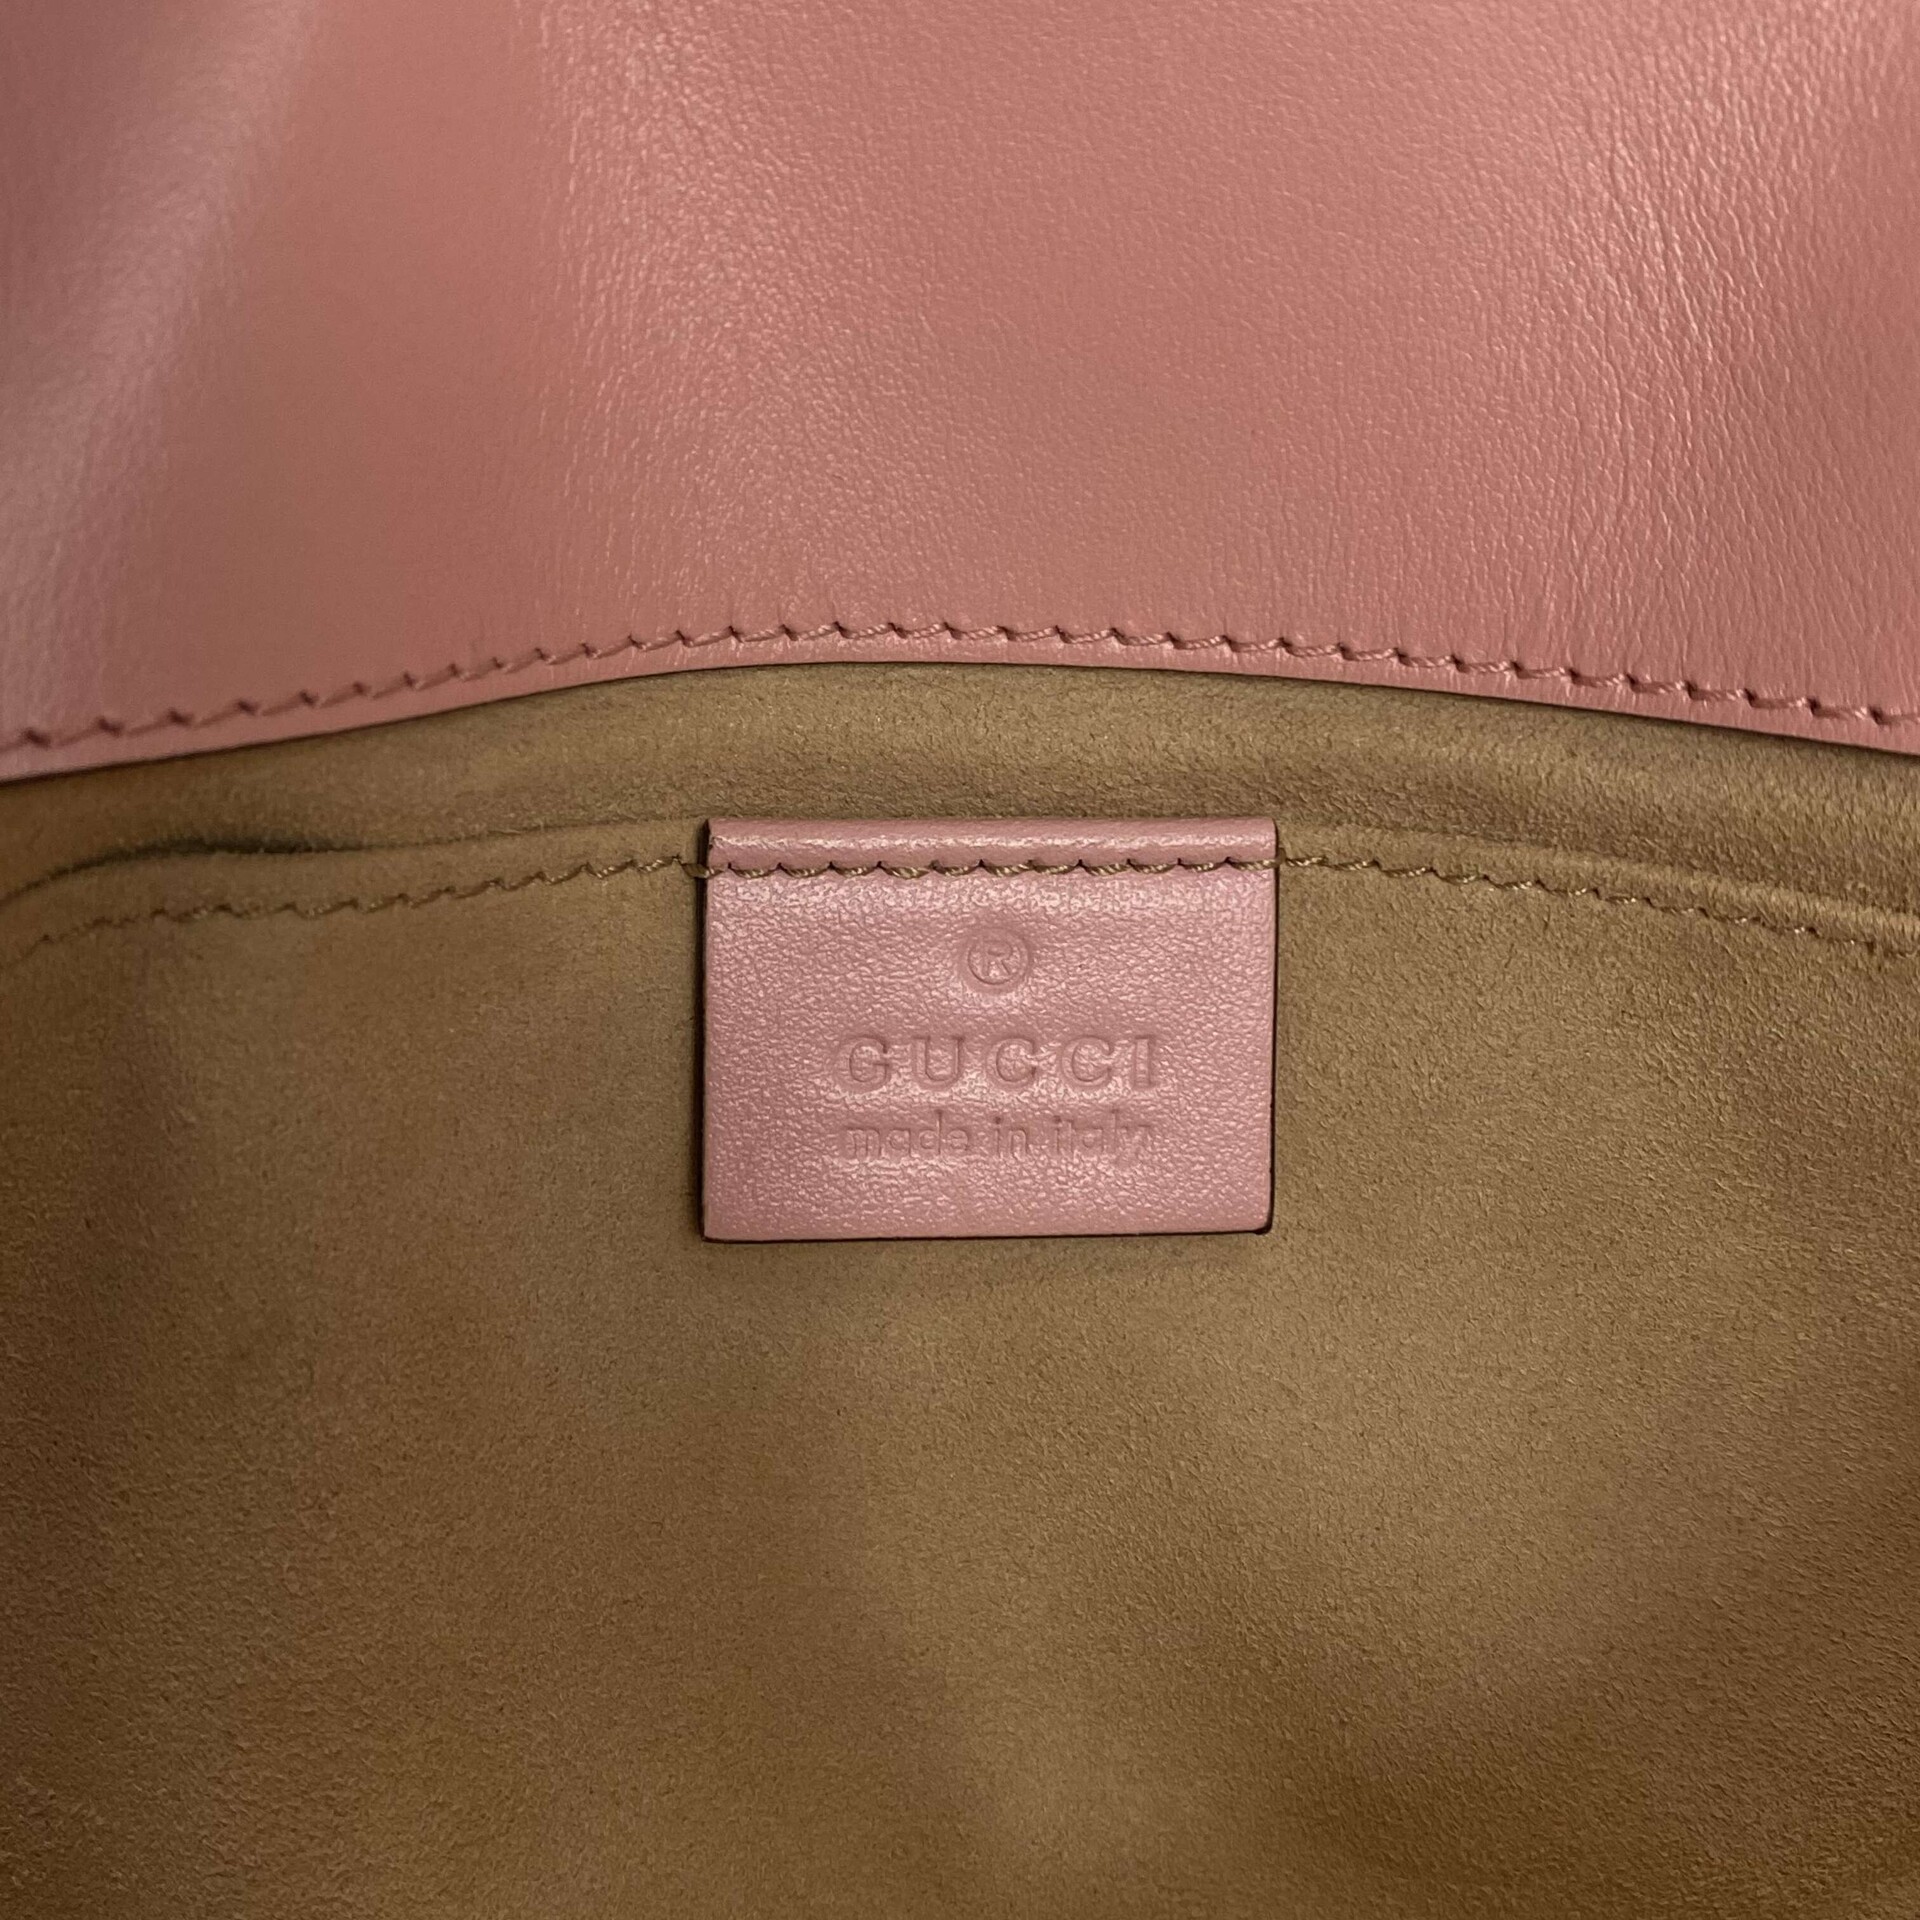 Bolsa Gucci Marmont Rosa Pequena